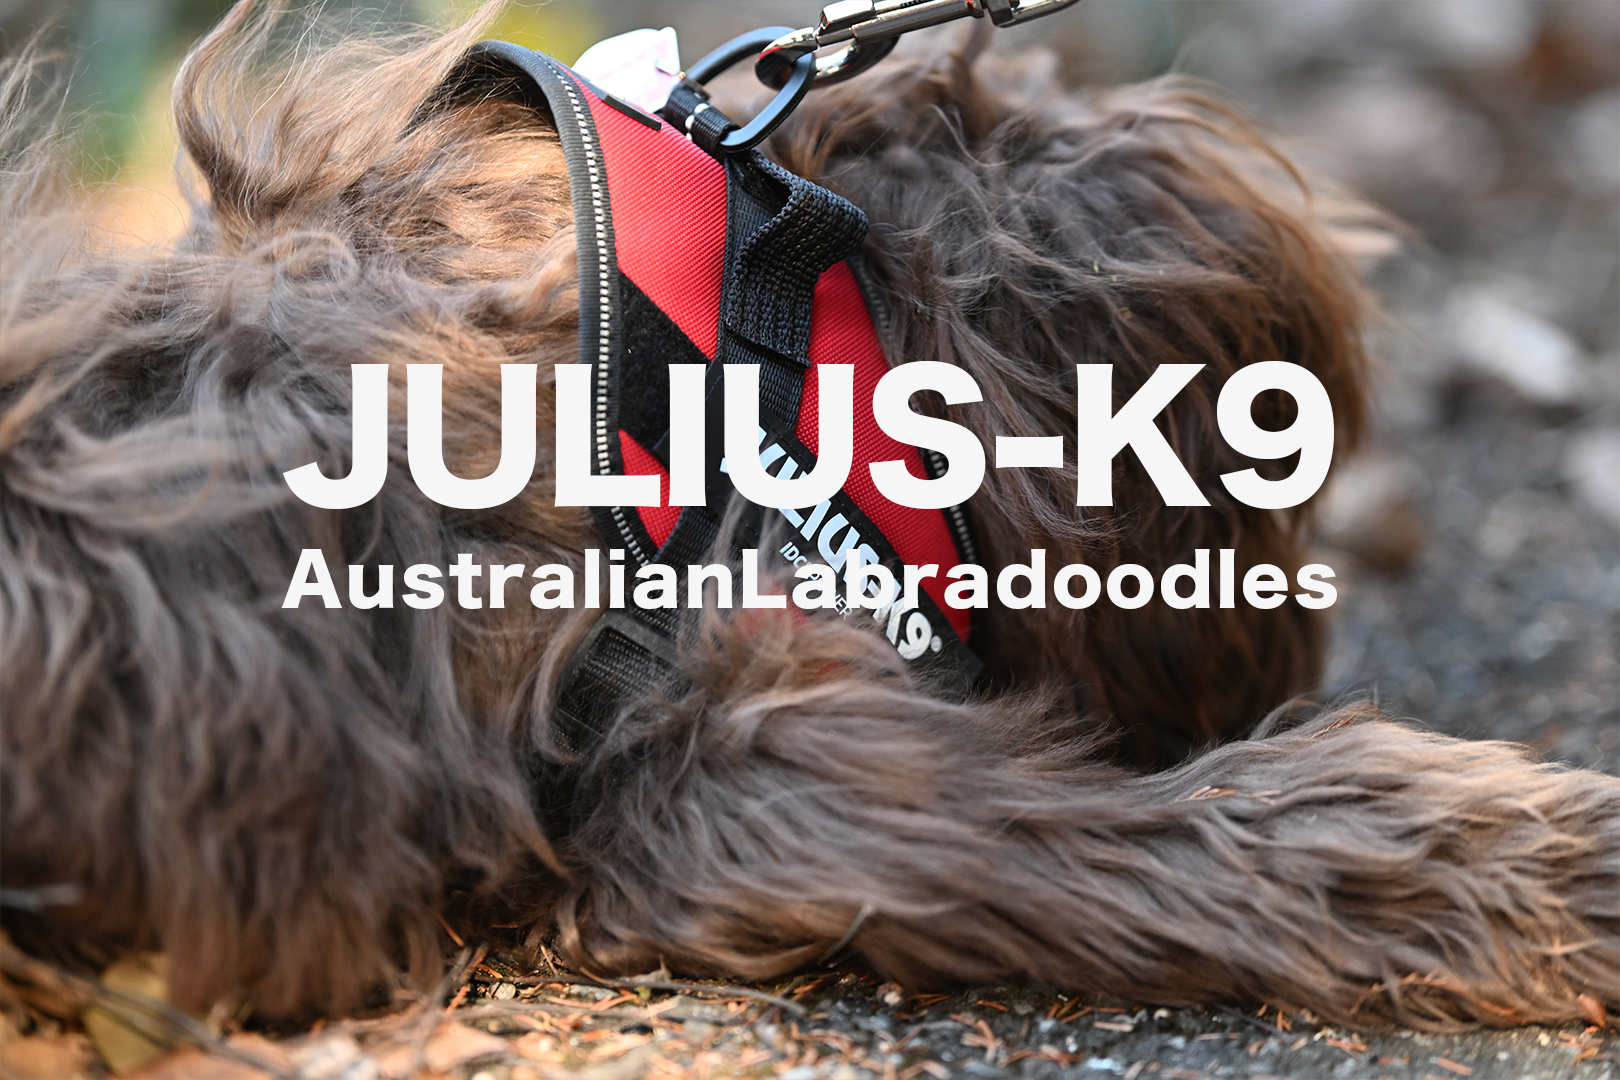 Julius-K9 ユリウスケーナイン オーストラリアンラブラドゥードル ロシェ AL